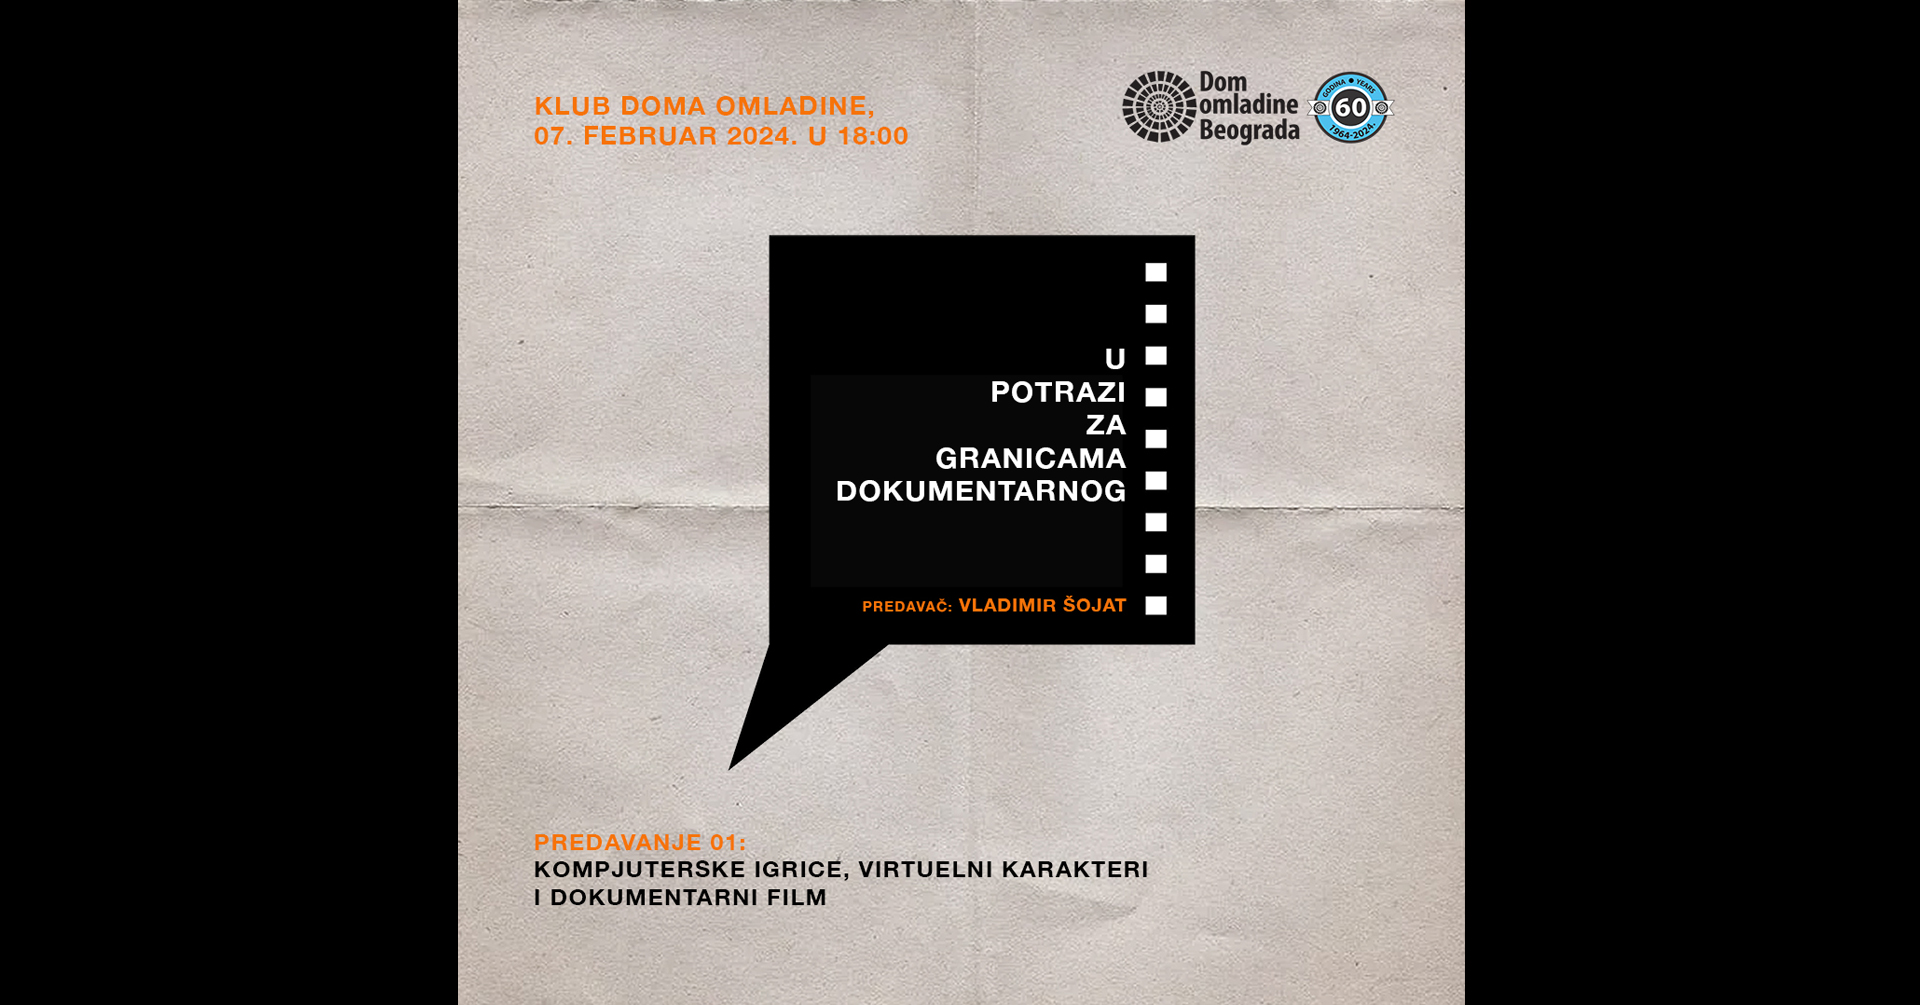 Predavanje KOMPJUTERSKE IGRICE, VIRTUELNI KARAKTERI I DOKUMENTARNI FILM // Dom omladine Beograda // 07.02.